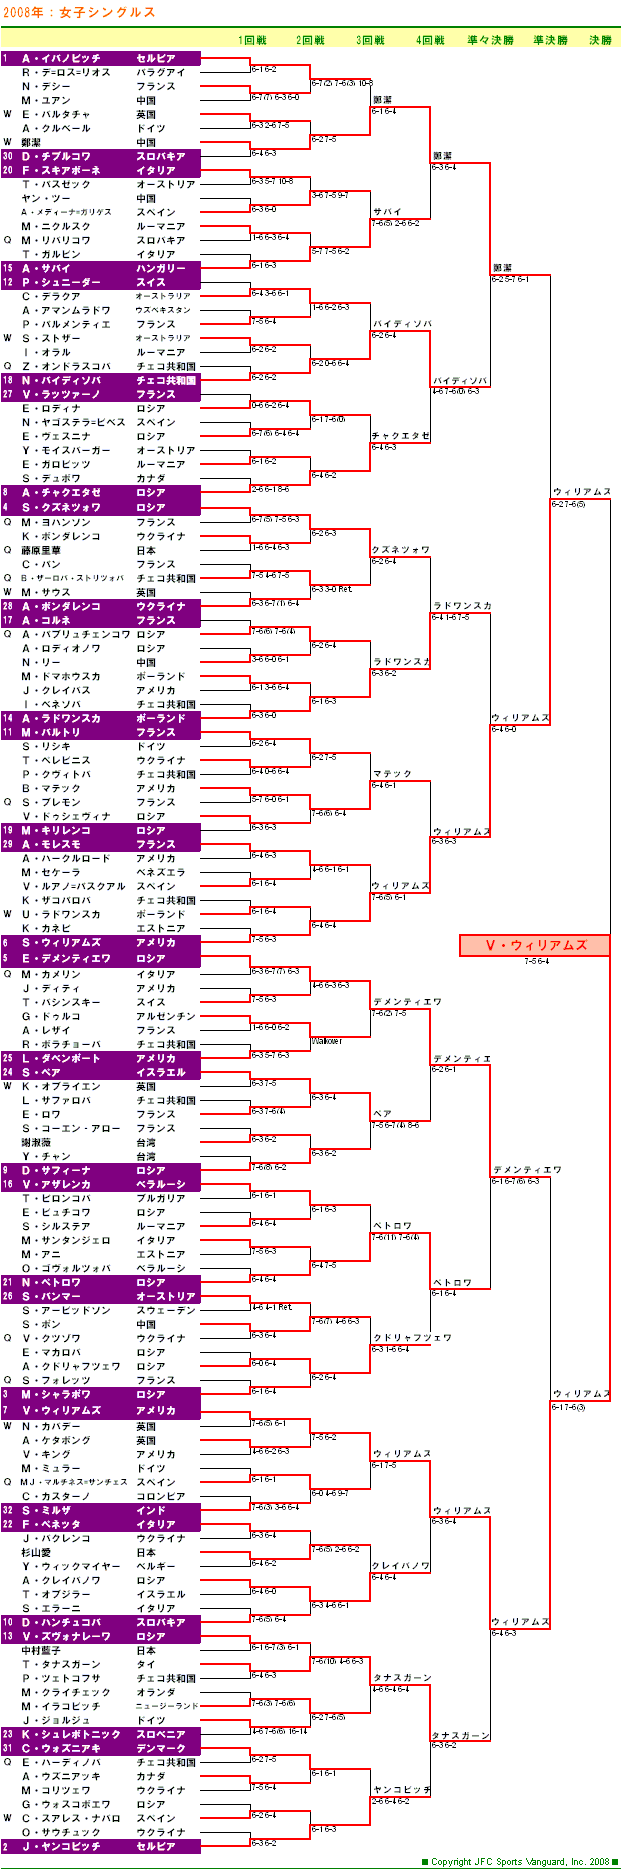 ウィンブルドンテニス2008　女子シングルスドロー表